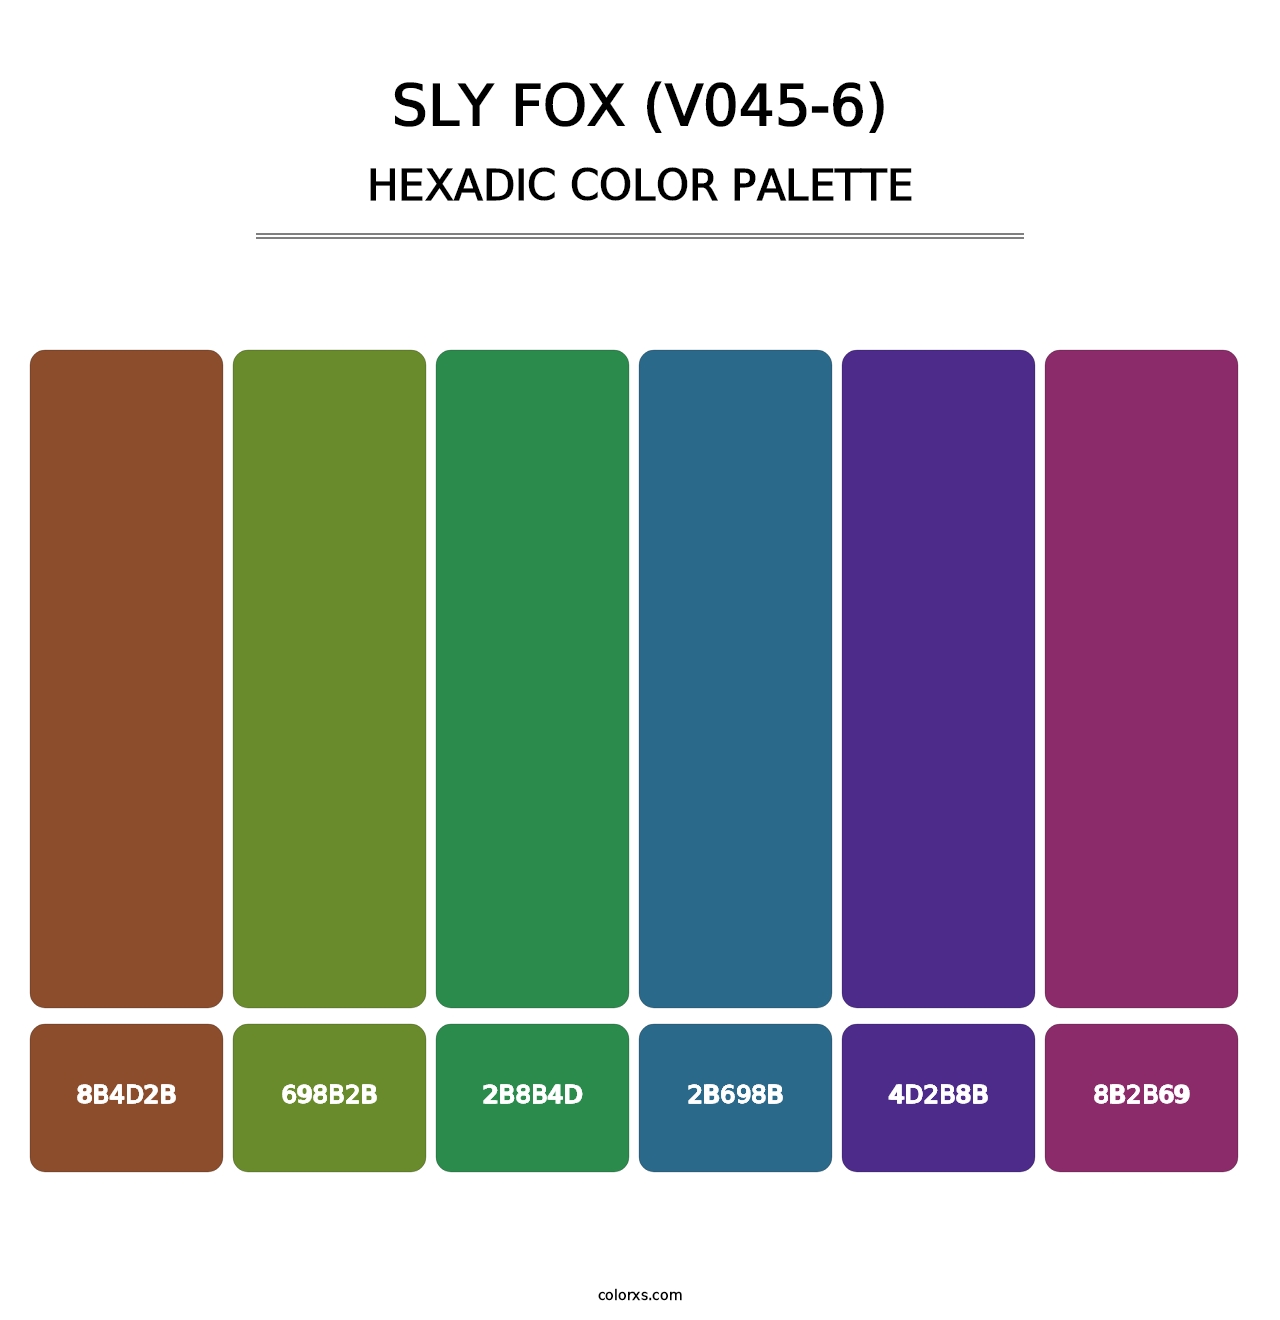 Sly Fox (V045-6) - Hexadic Color Palette